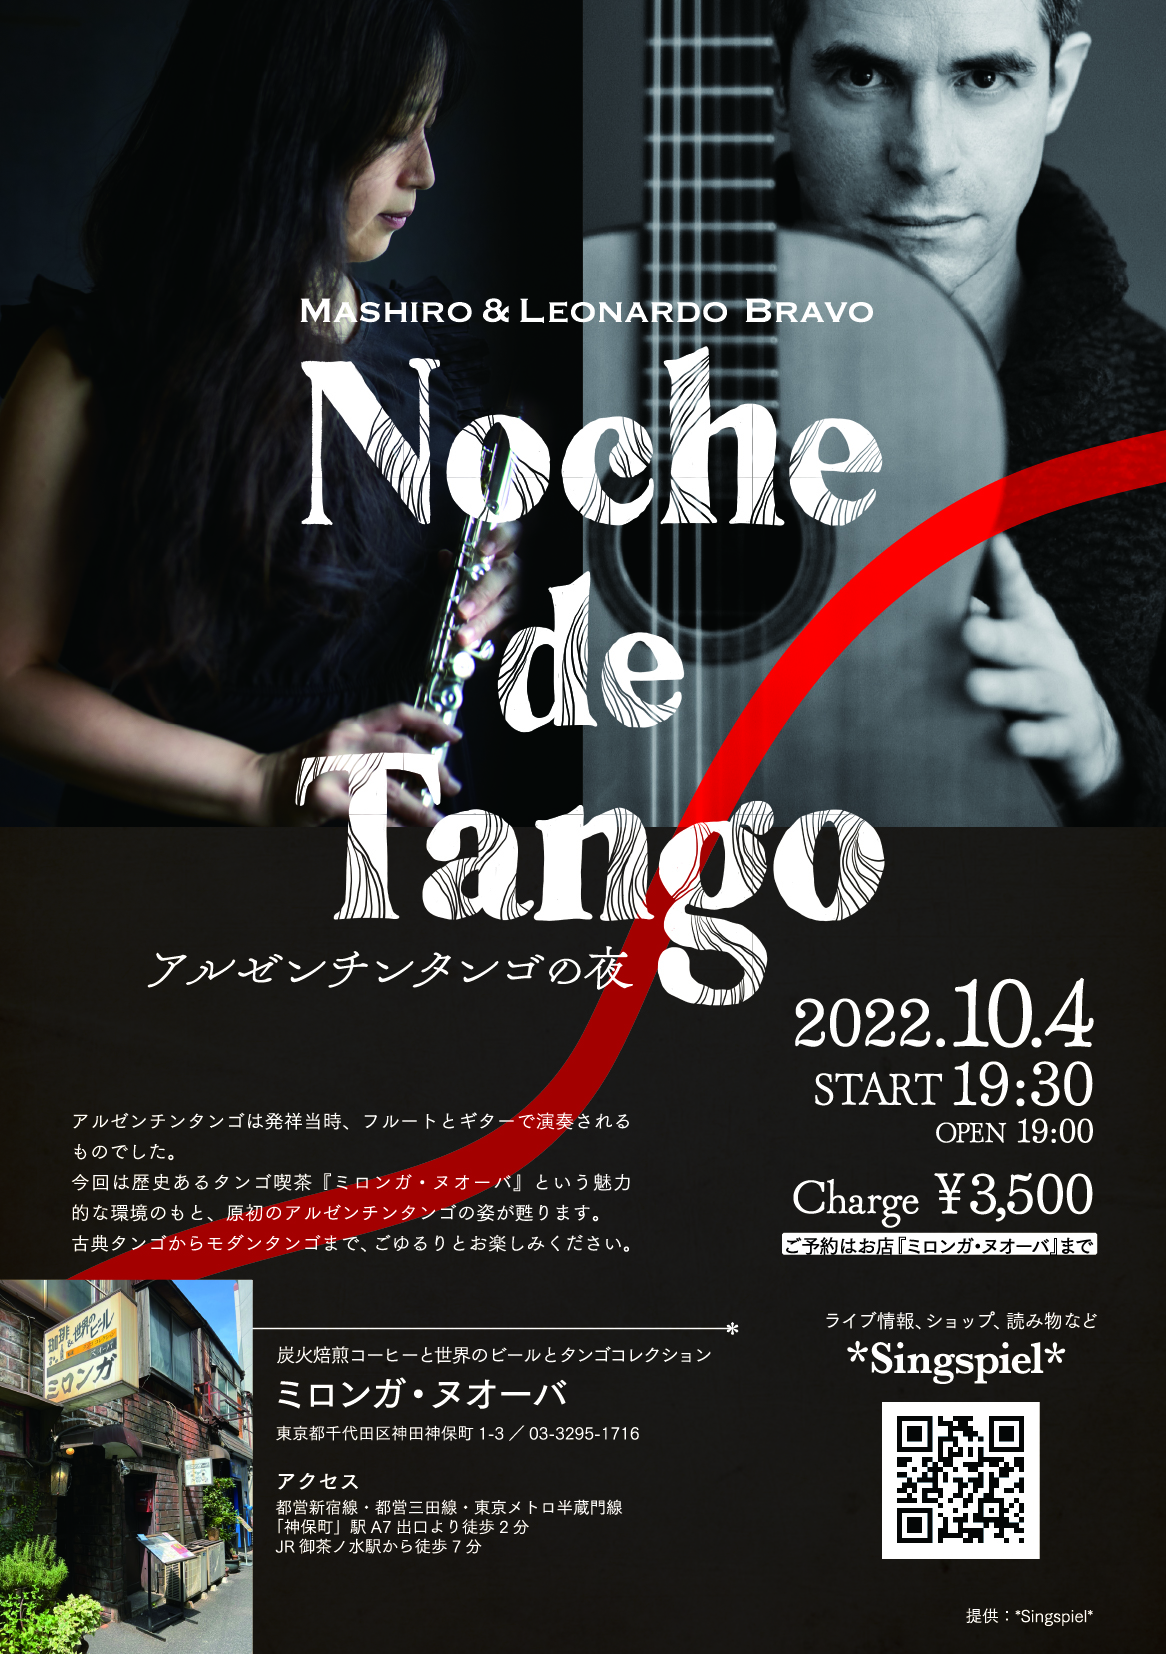 『Noche de Tango』のライブ開催が決まりました！